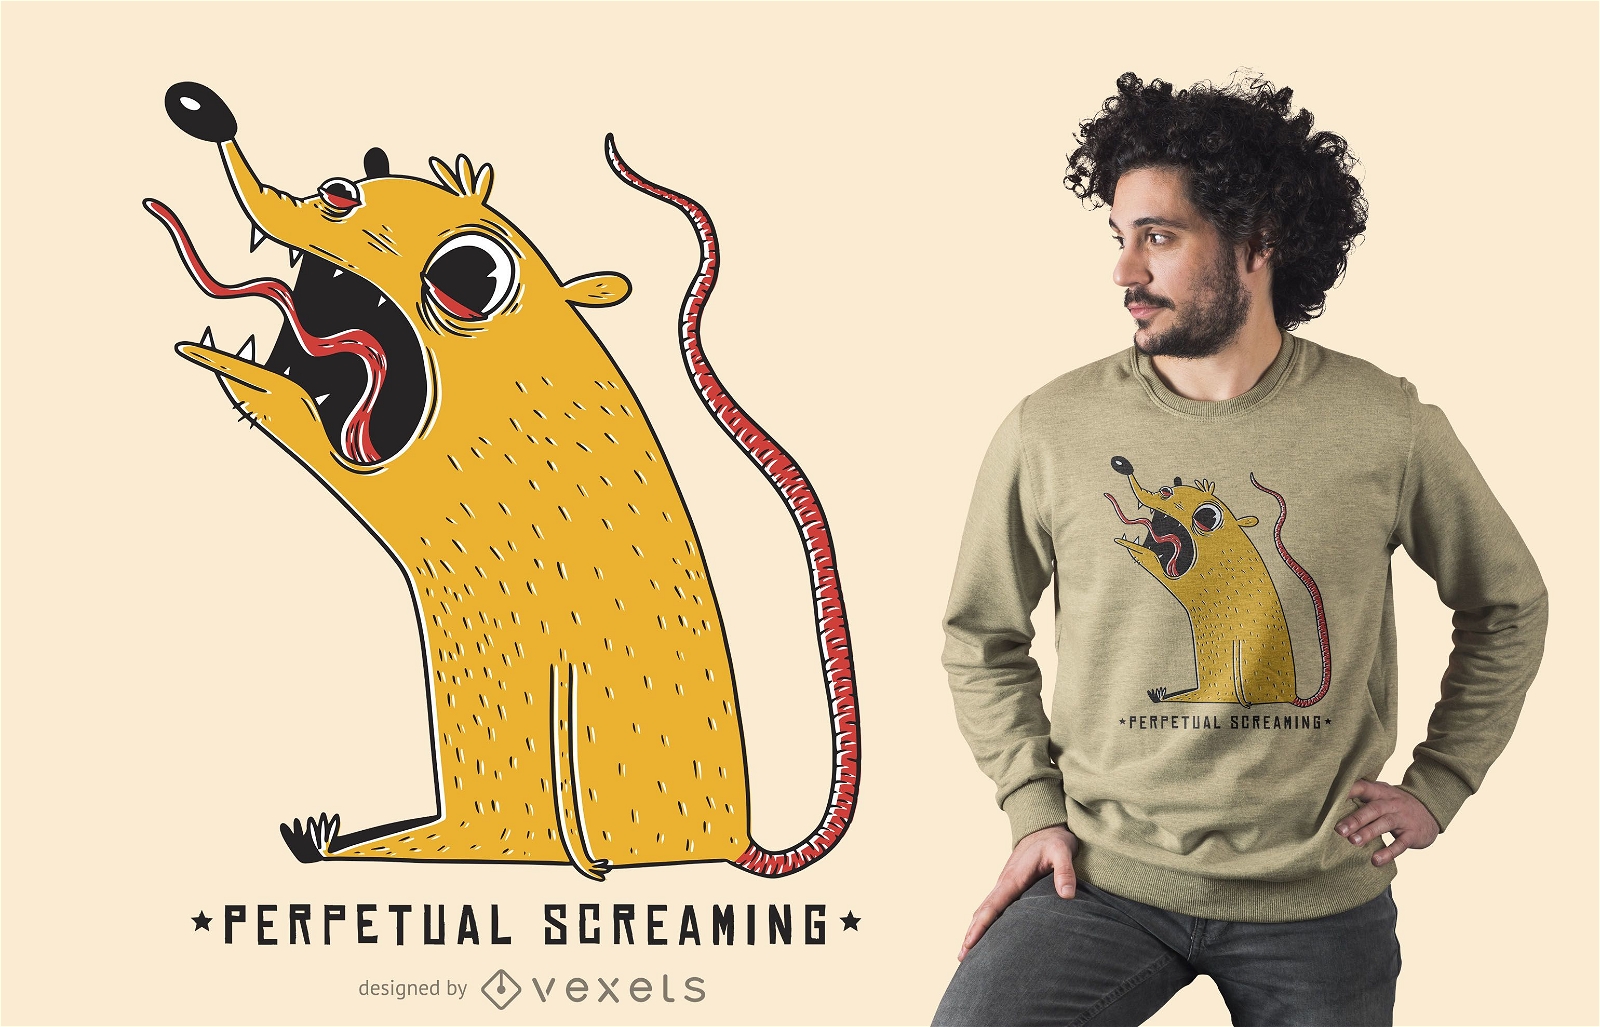 Perpetual screaming t-shirt design